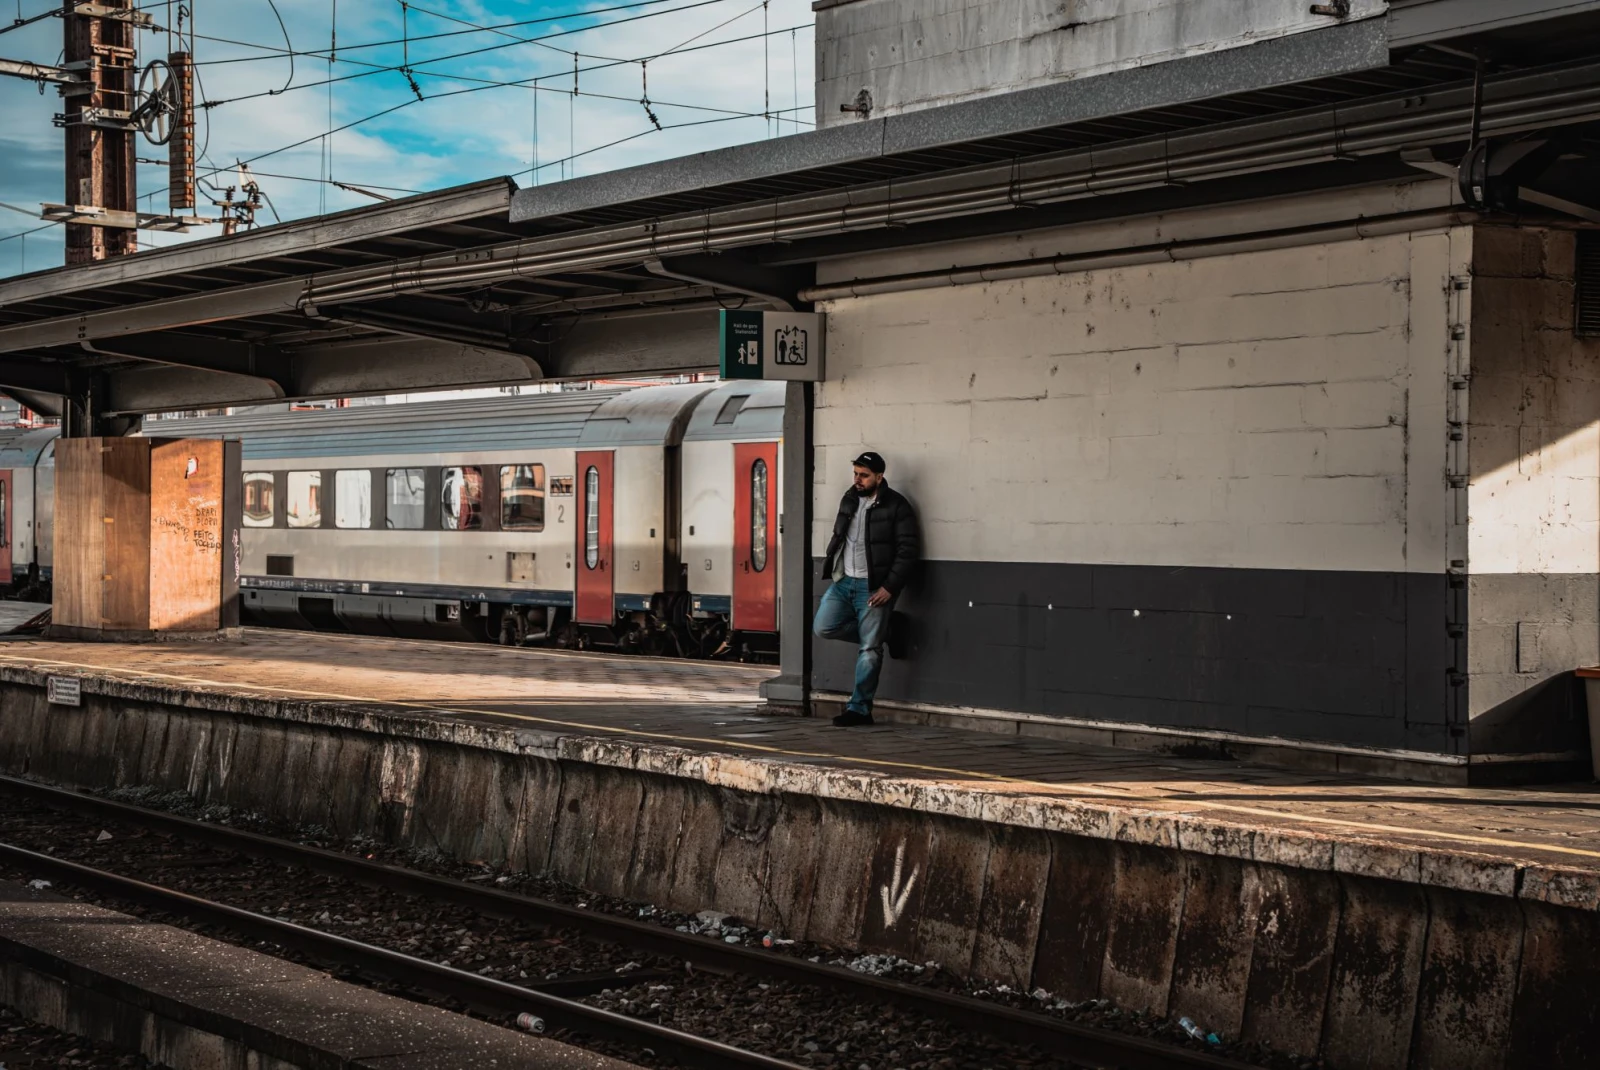 A man standing on a platform next to a train.